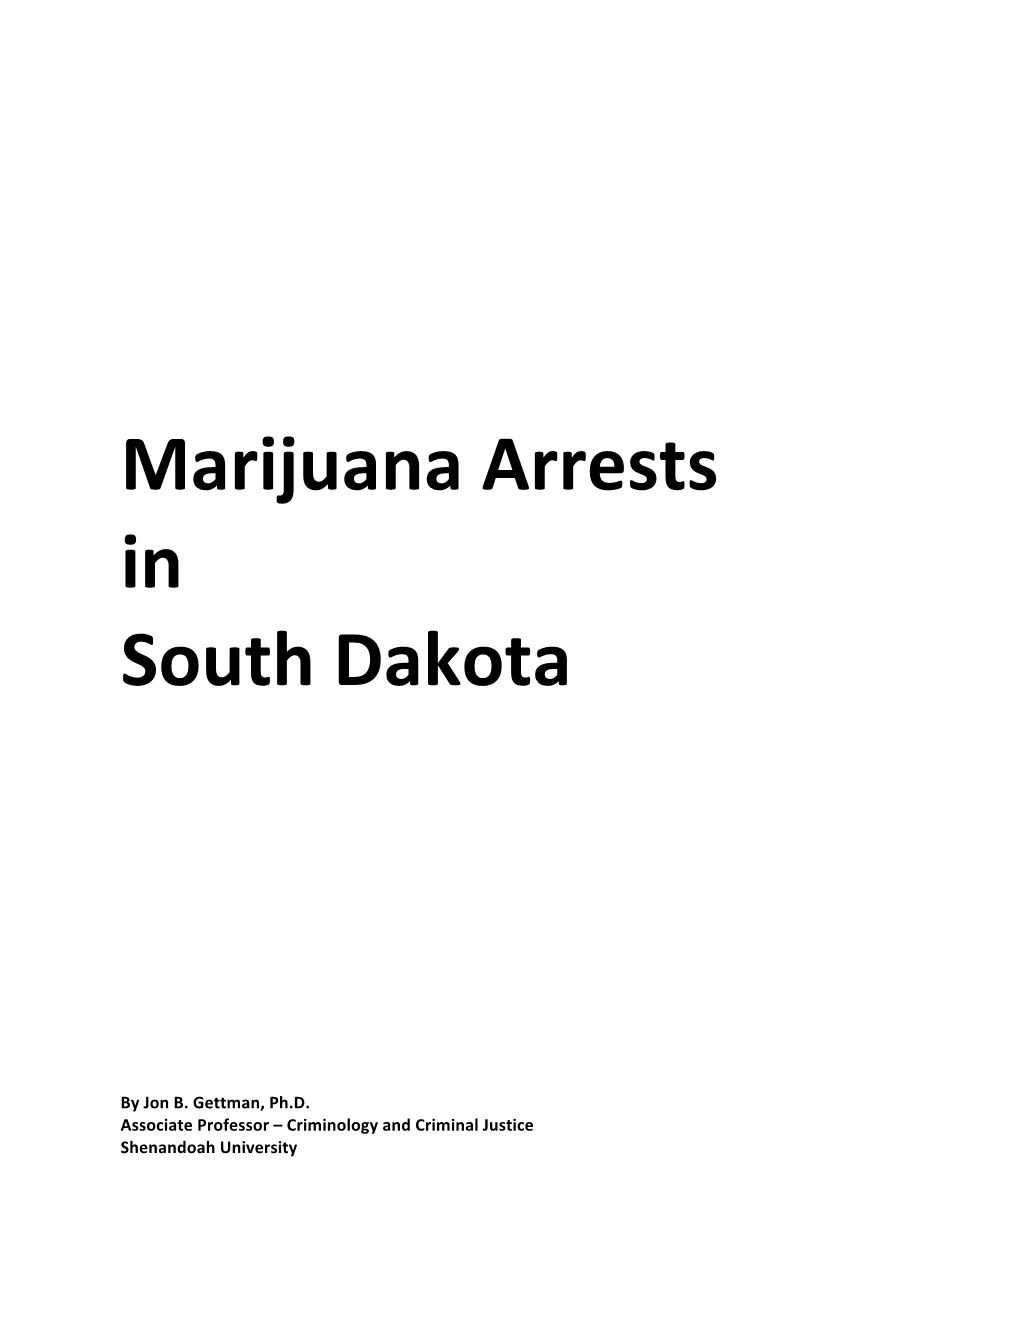 Marijuana Arrests in South Dakota